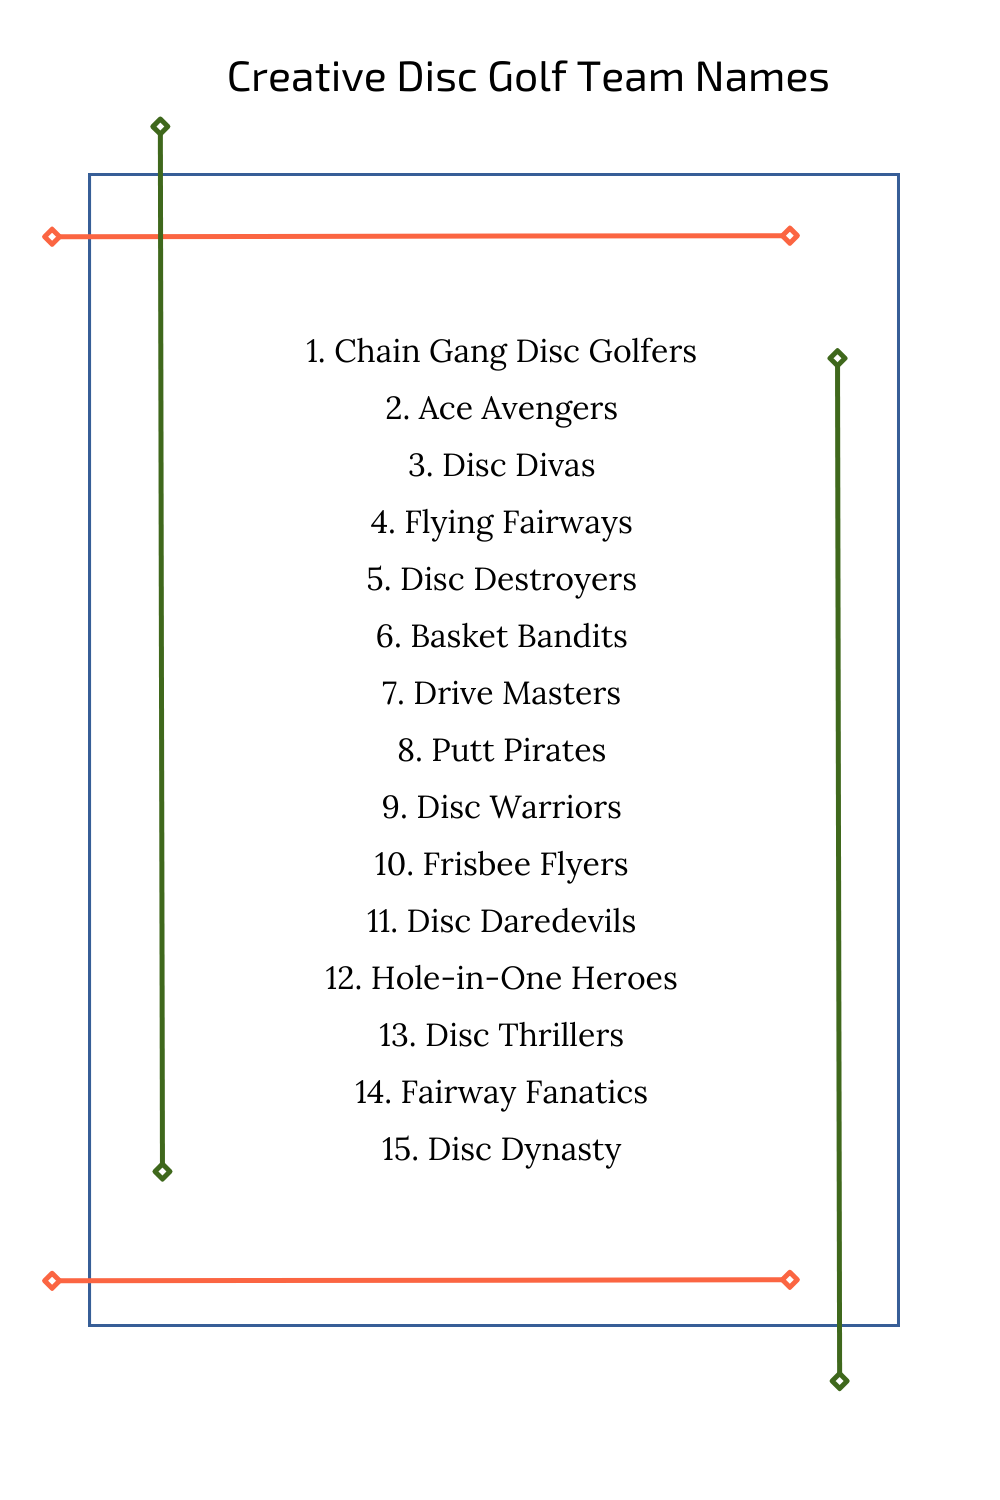 Creative Disc Golf Team Names